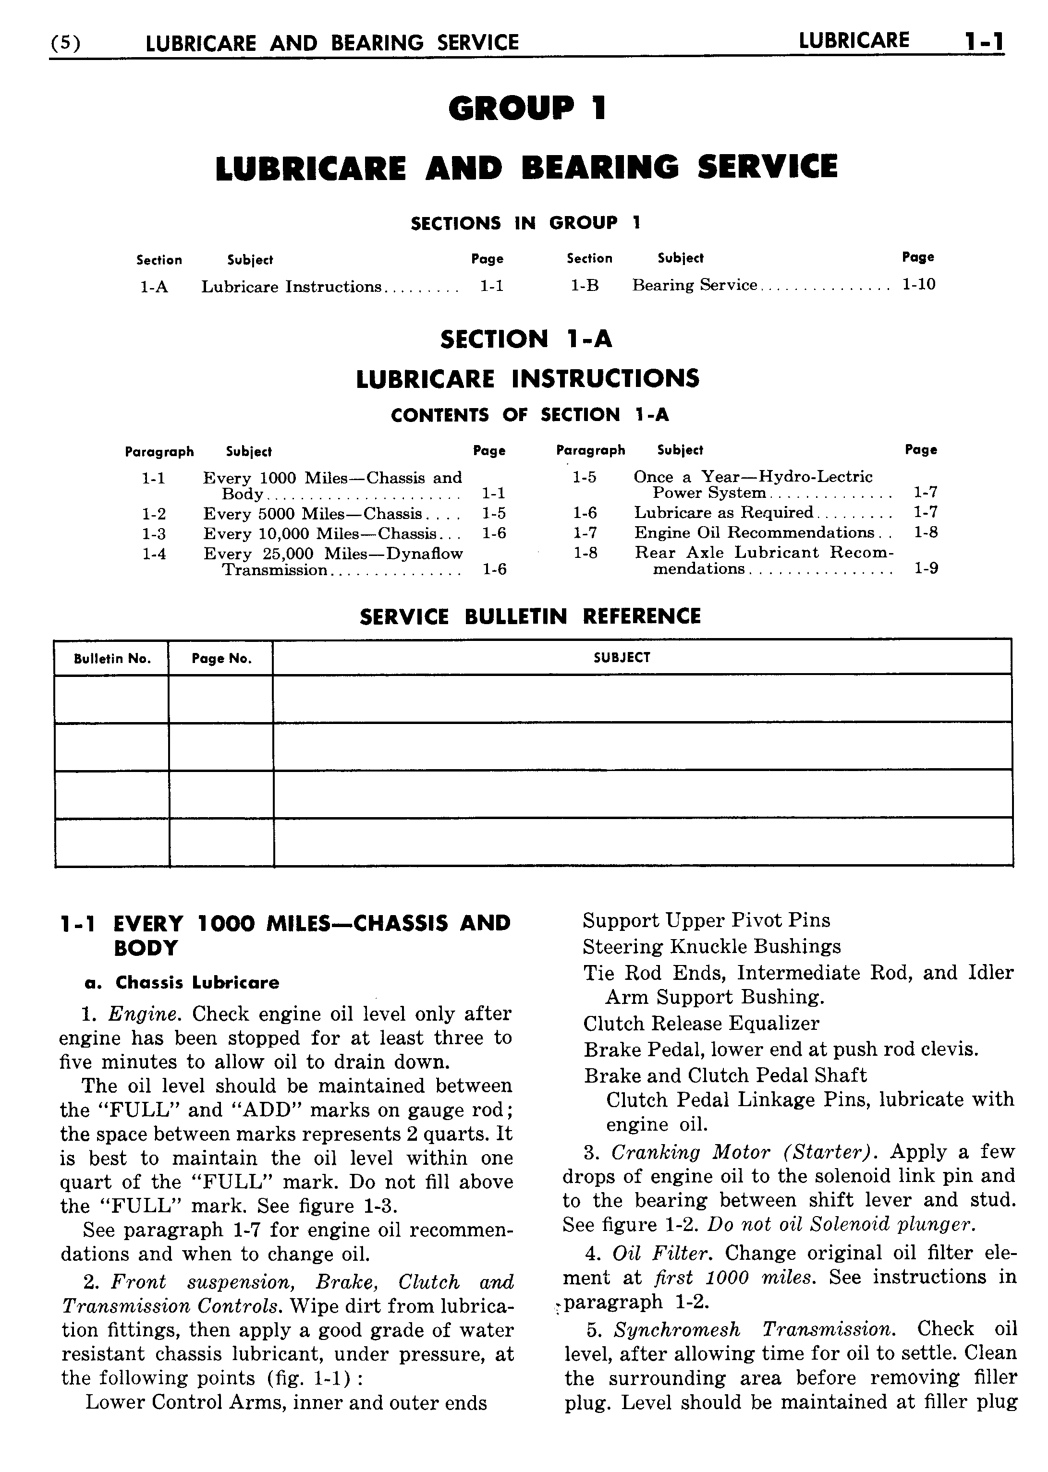 n_02 1954 Buick Shop Manual - Lubricare-001-001.jpg